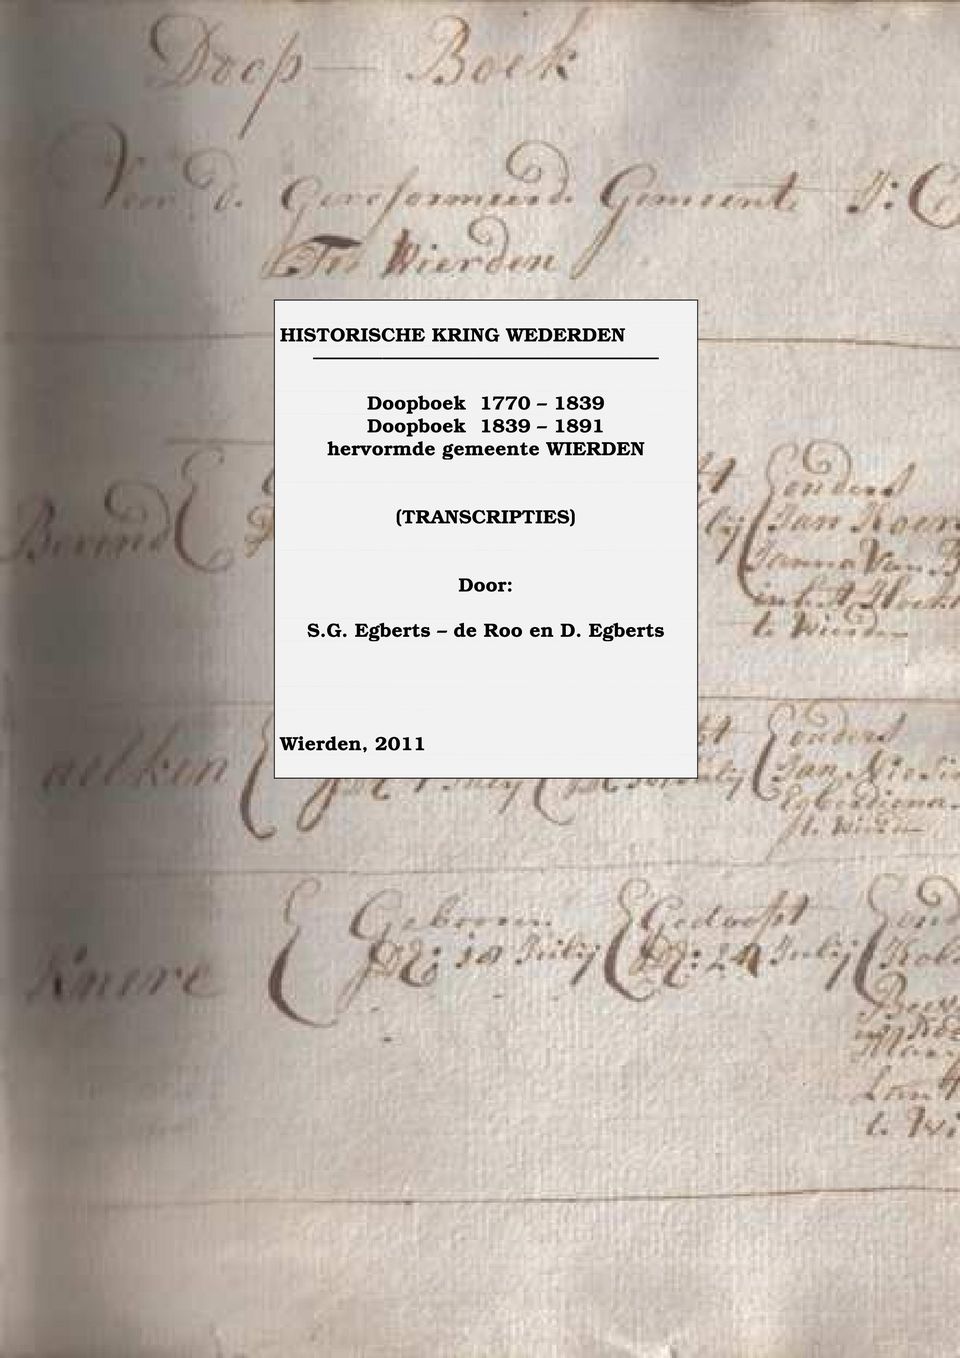 1839 Doopboek 1839 1891 hervormde gemeente WIERDEN